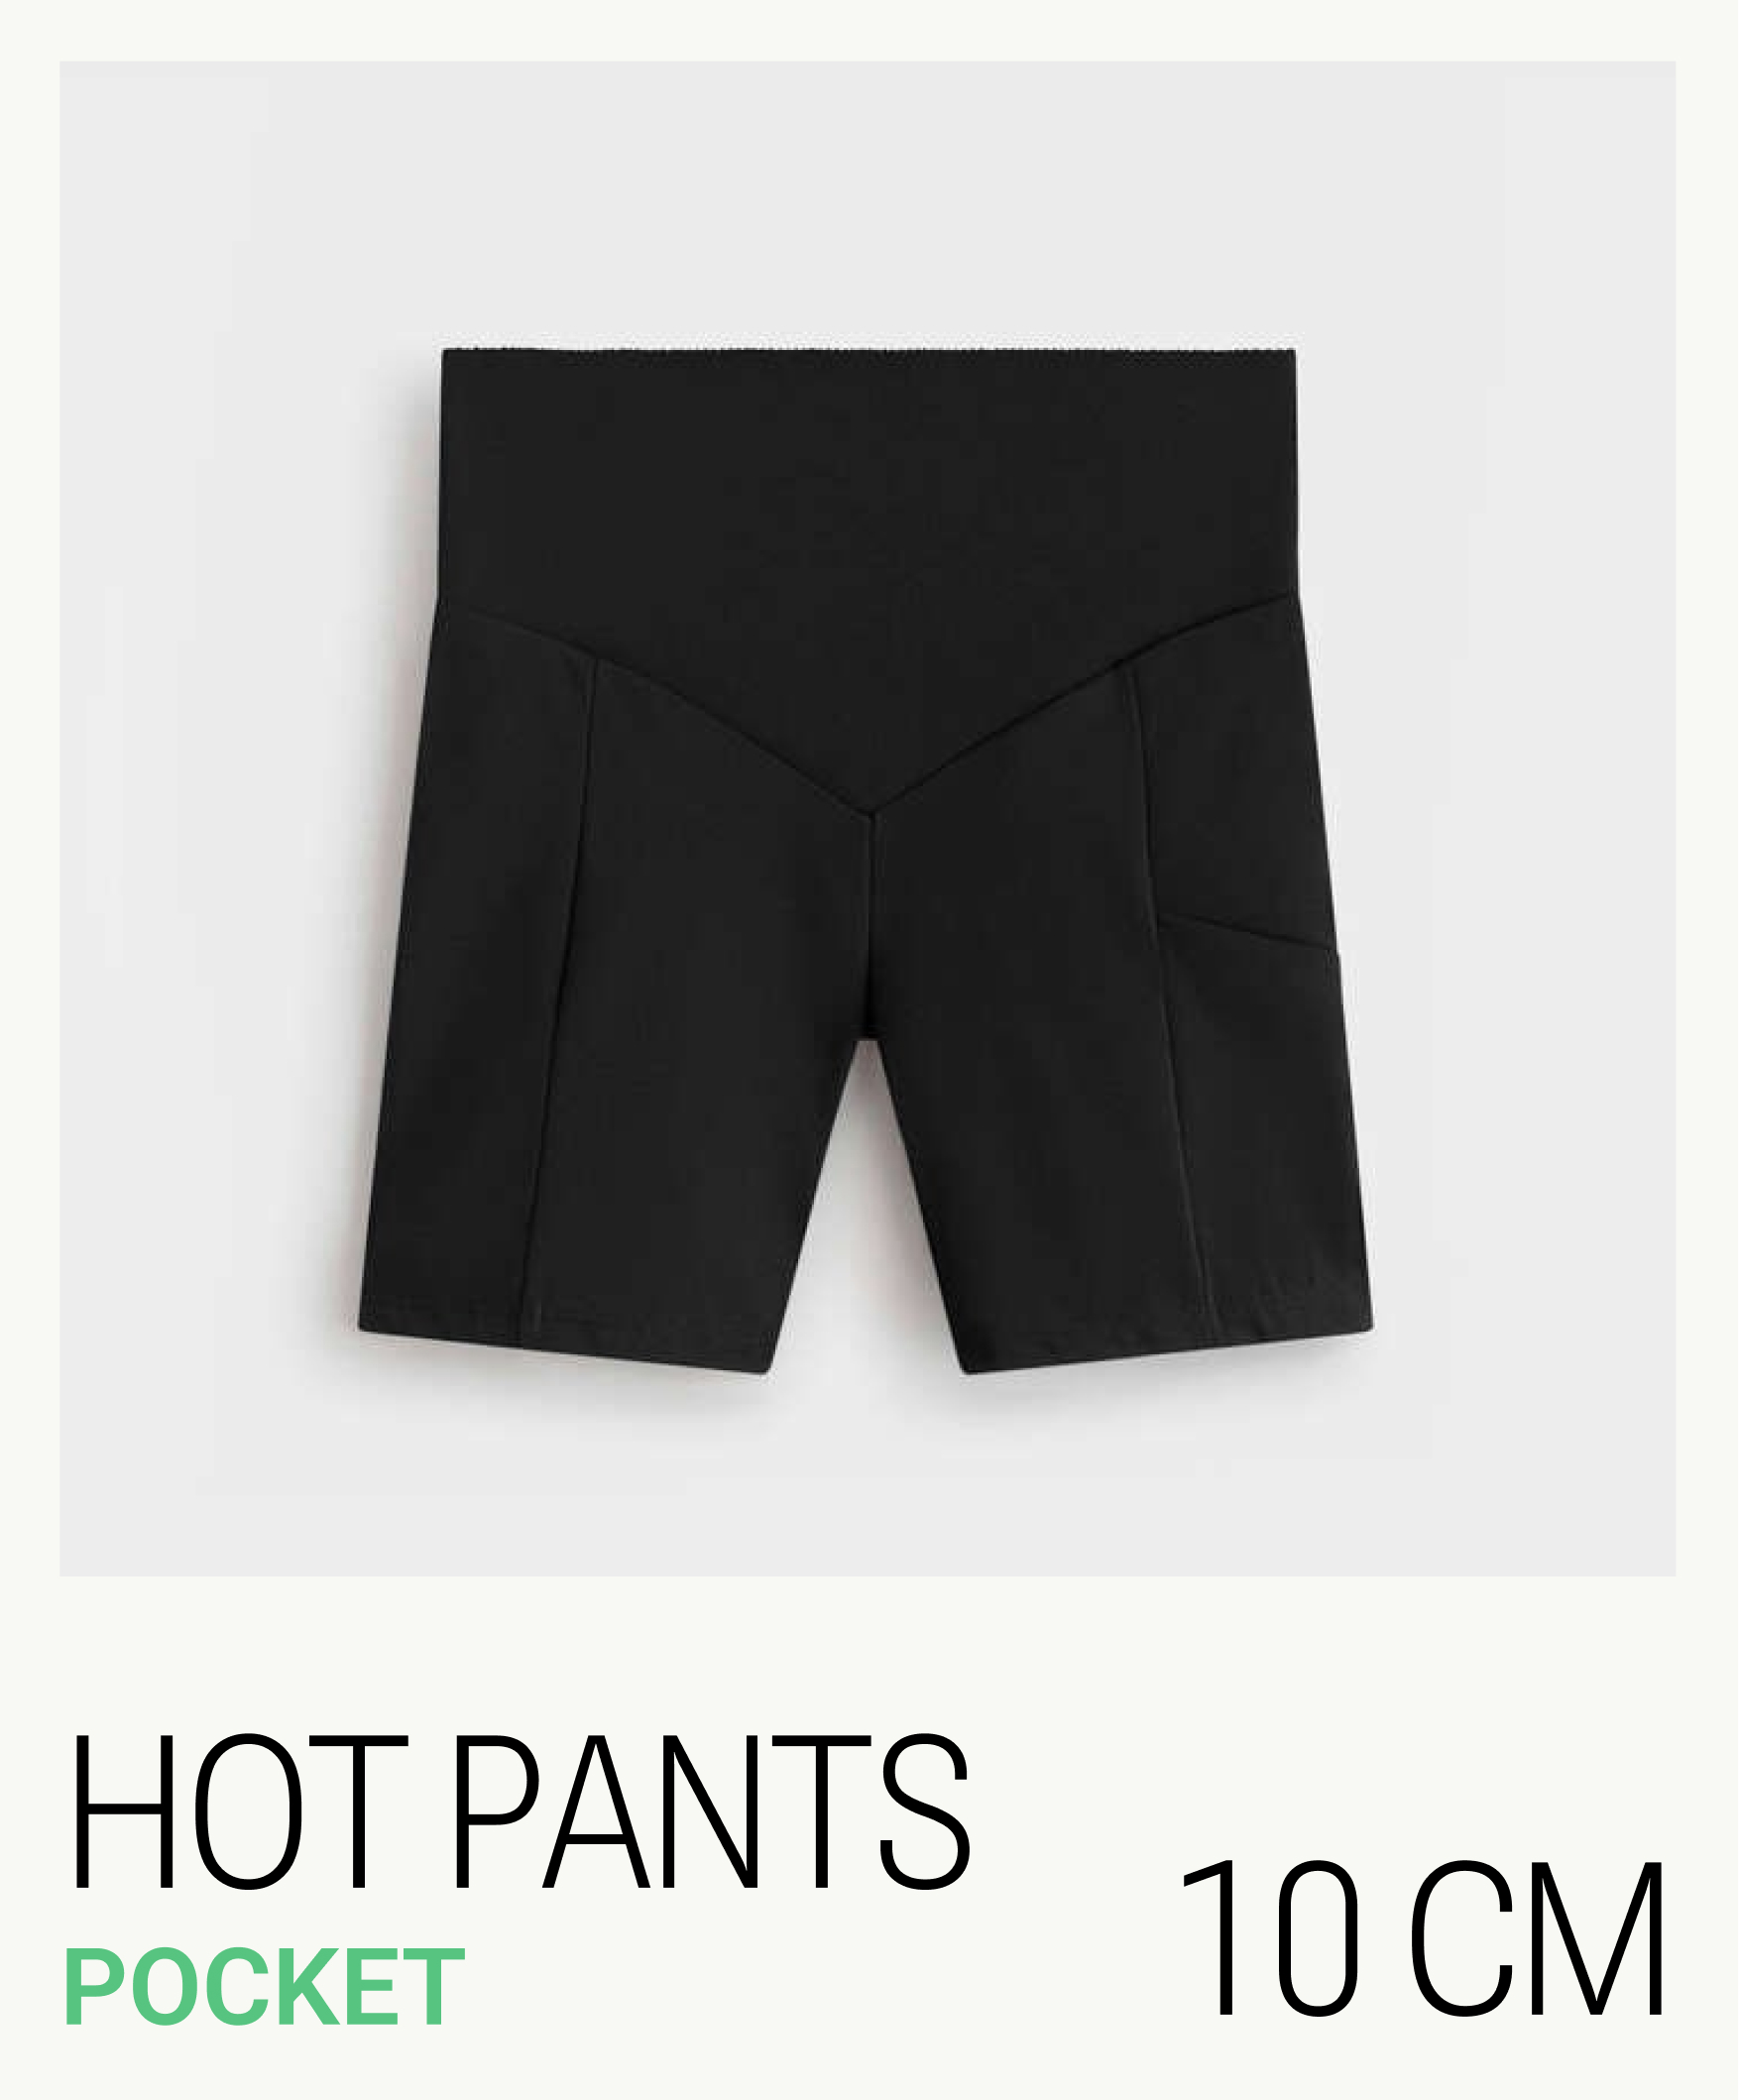 Hot pant compressive pocket 10 cm